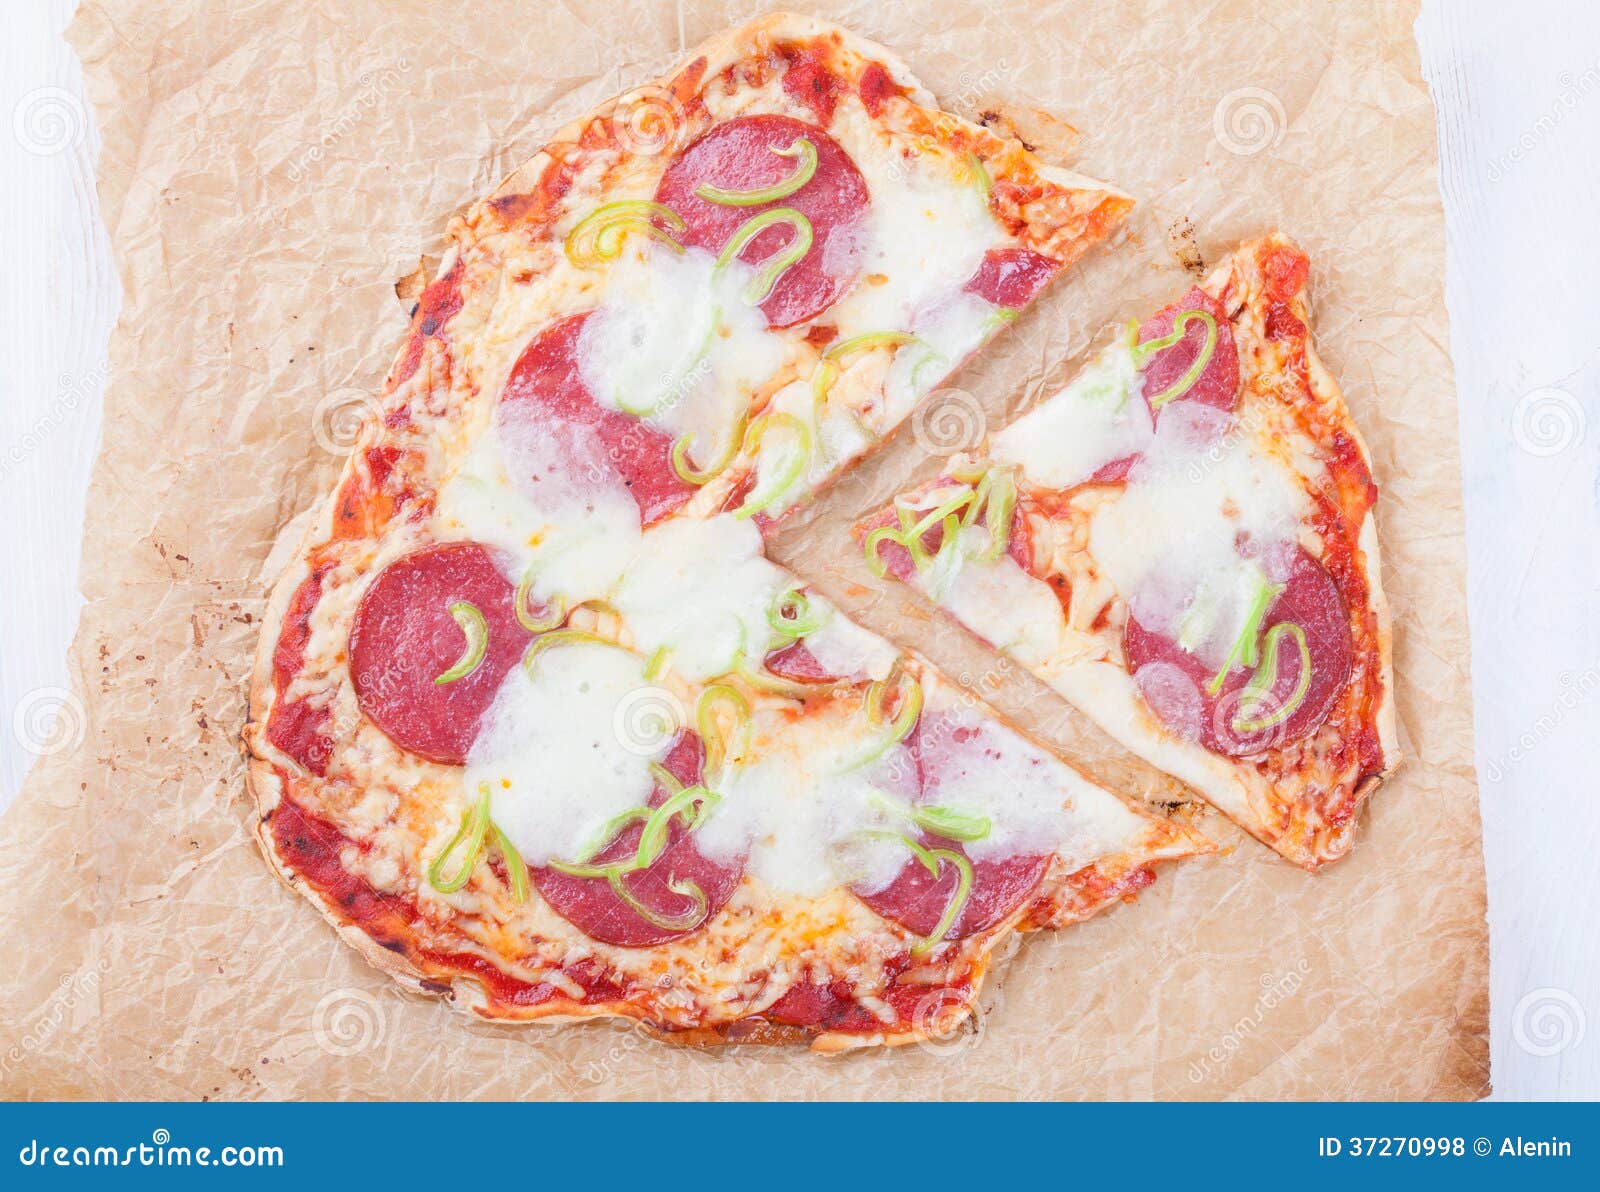 что сделать чтобы пицца не прилипала к противню в духовке фото 92